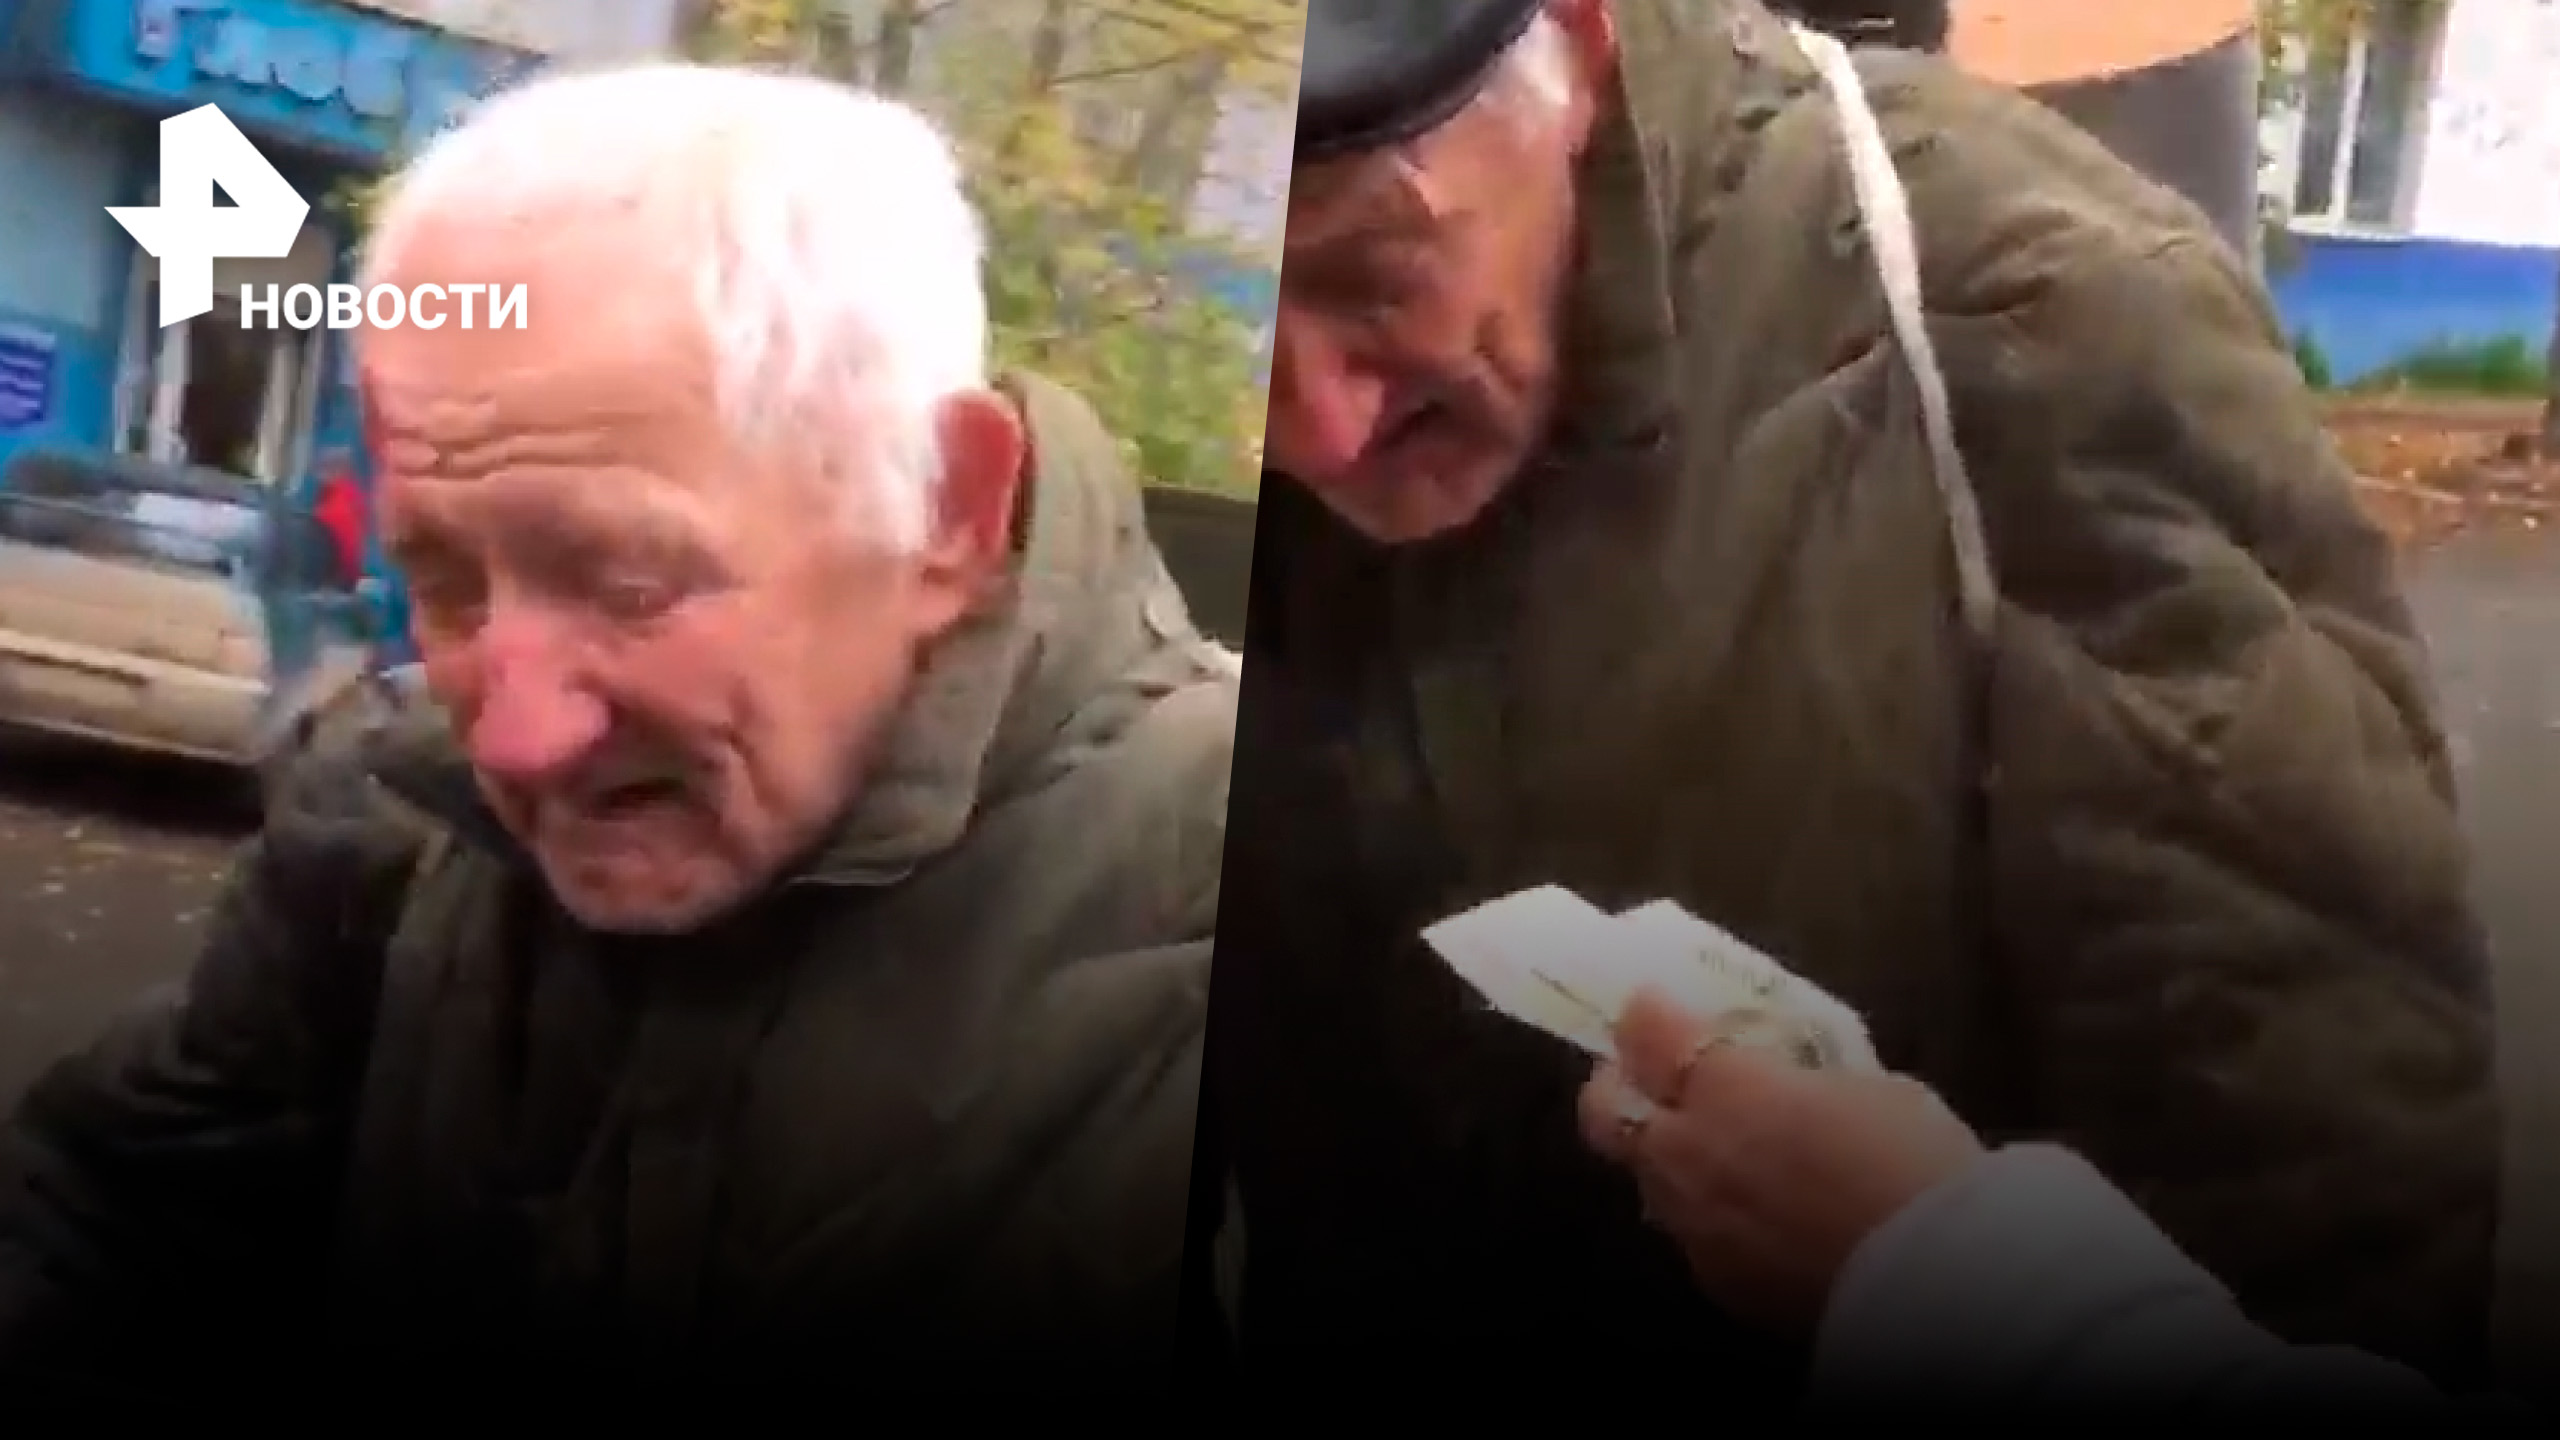 Откупиться от сбитого дедушки за 300 рублей попыталась пара из Канска / РЕН Новости